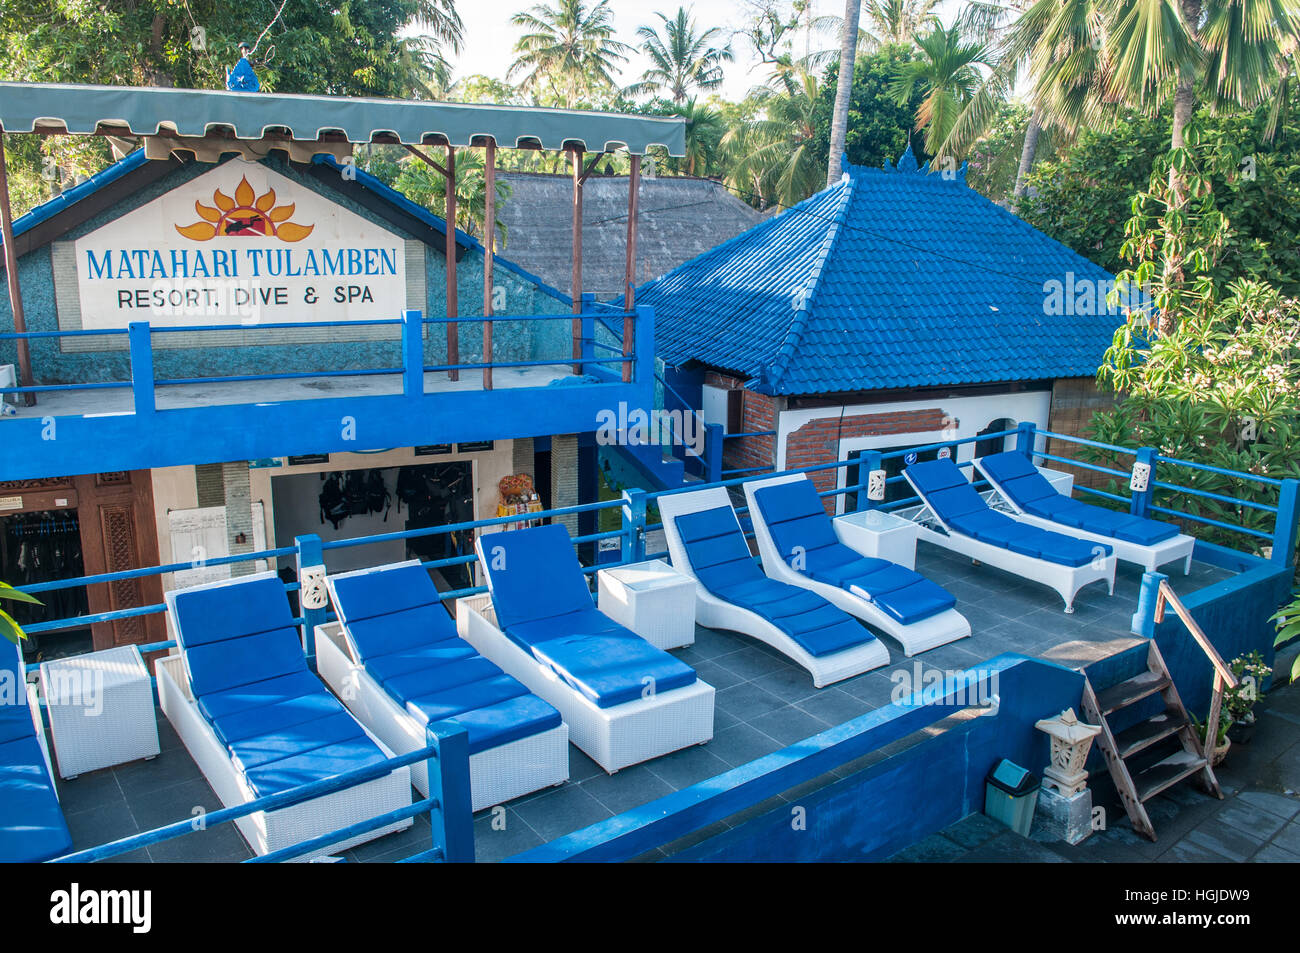 Matahari Tulamben Resort. Dive and Spa Stock Photo